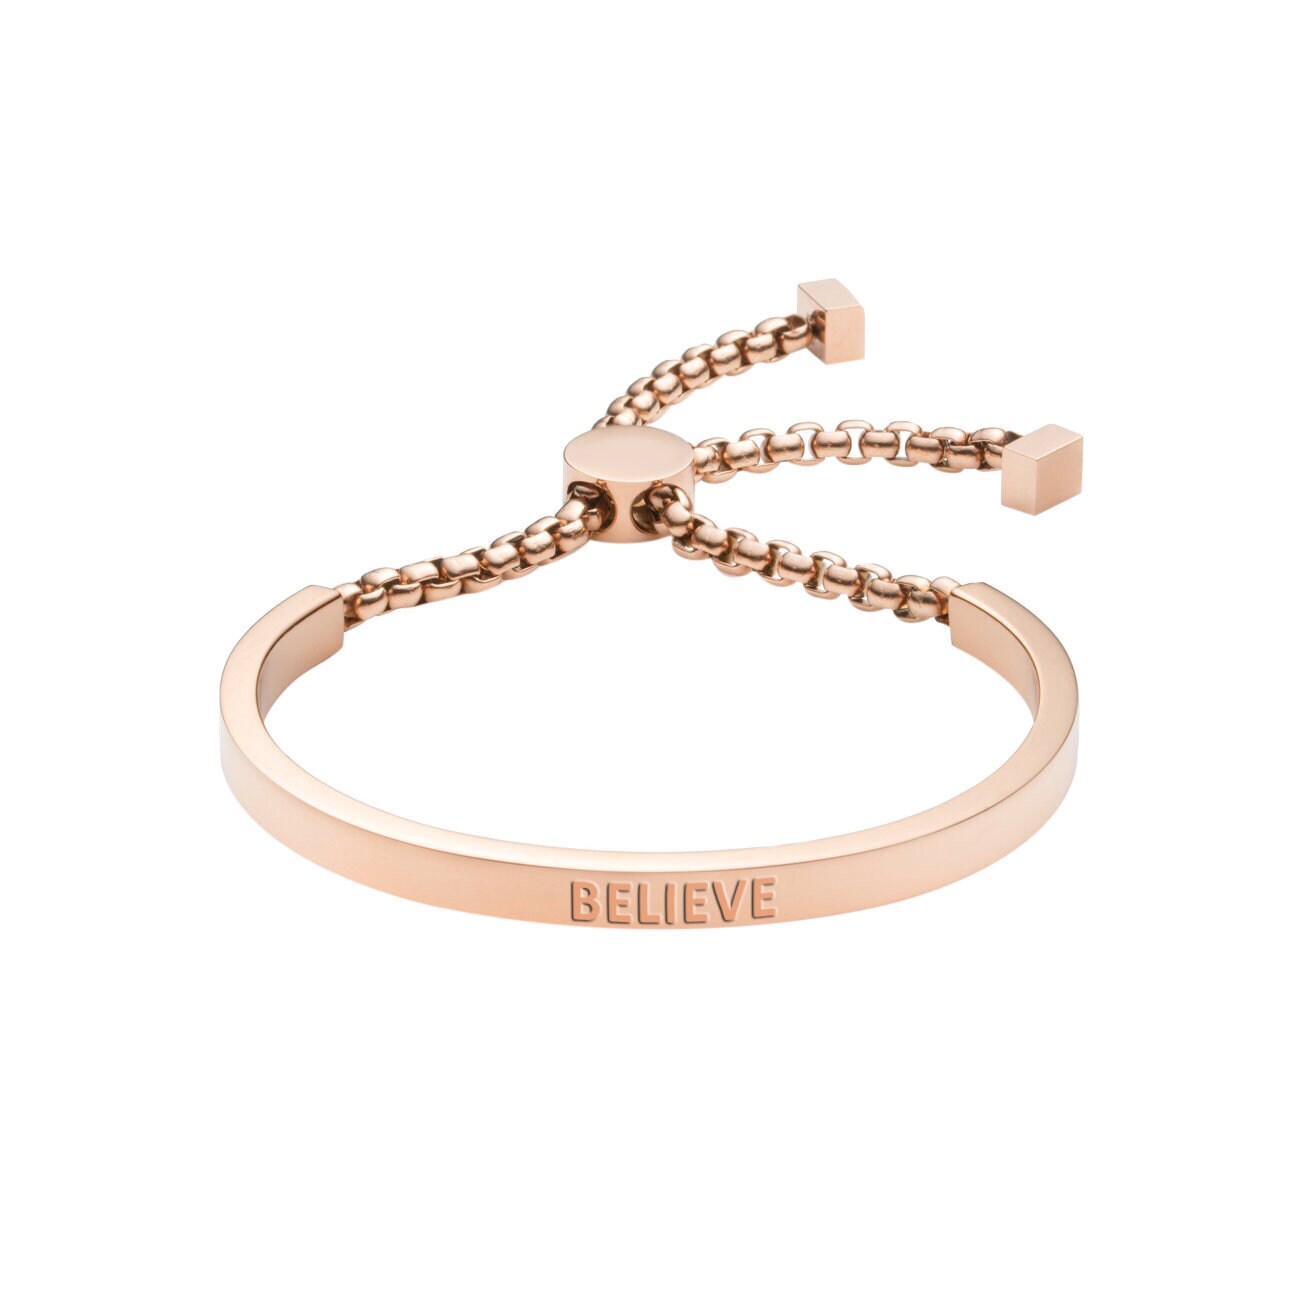 Believe Bracelet, Beads Bracelets, Inspiration Bracelets, Best Mom